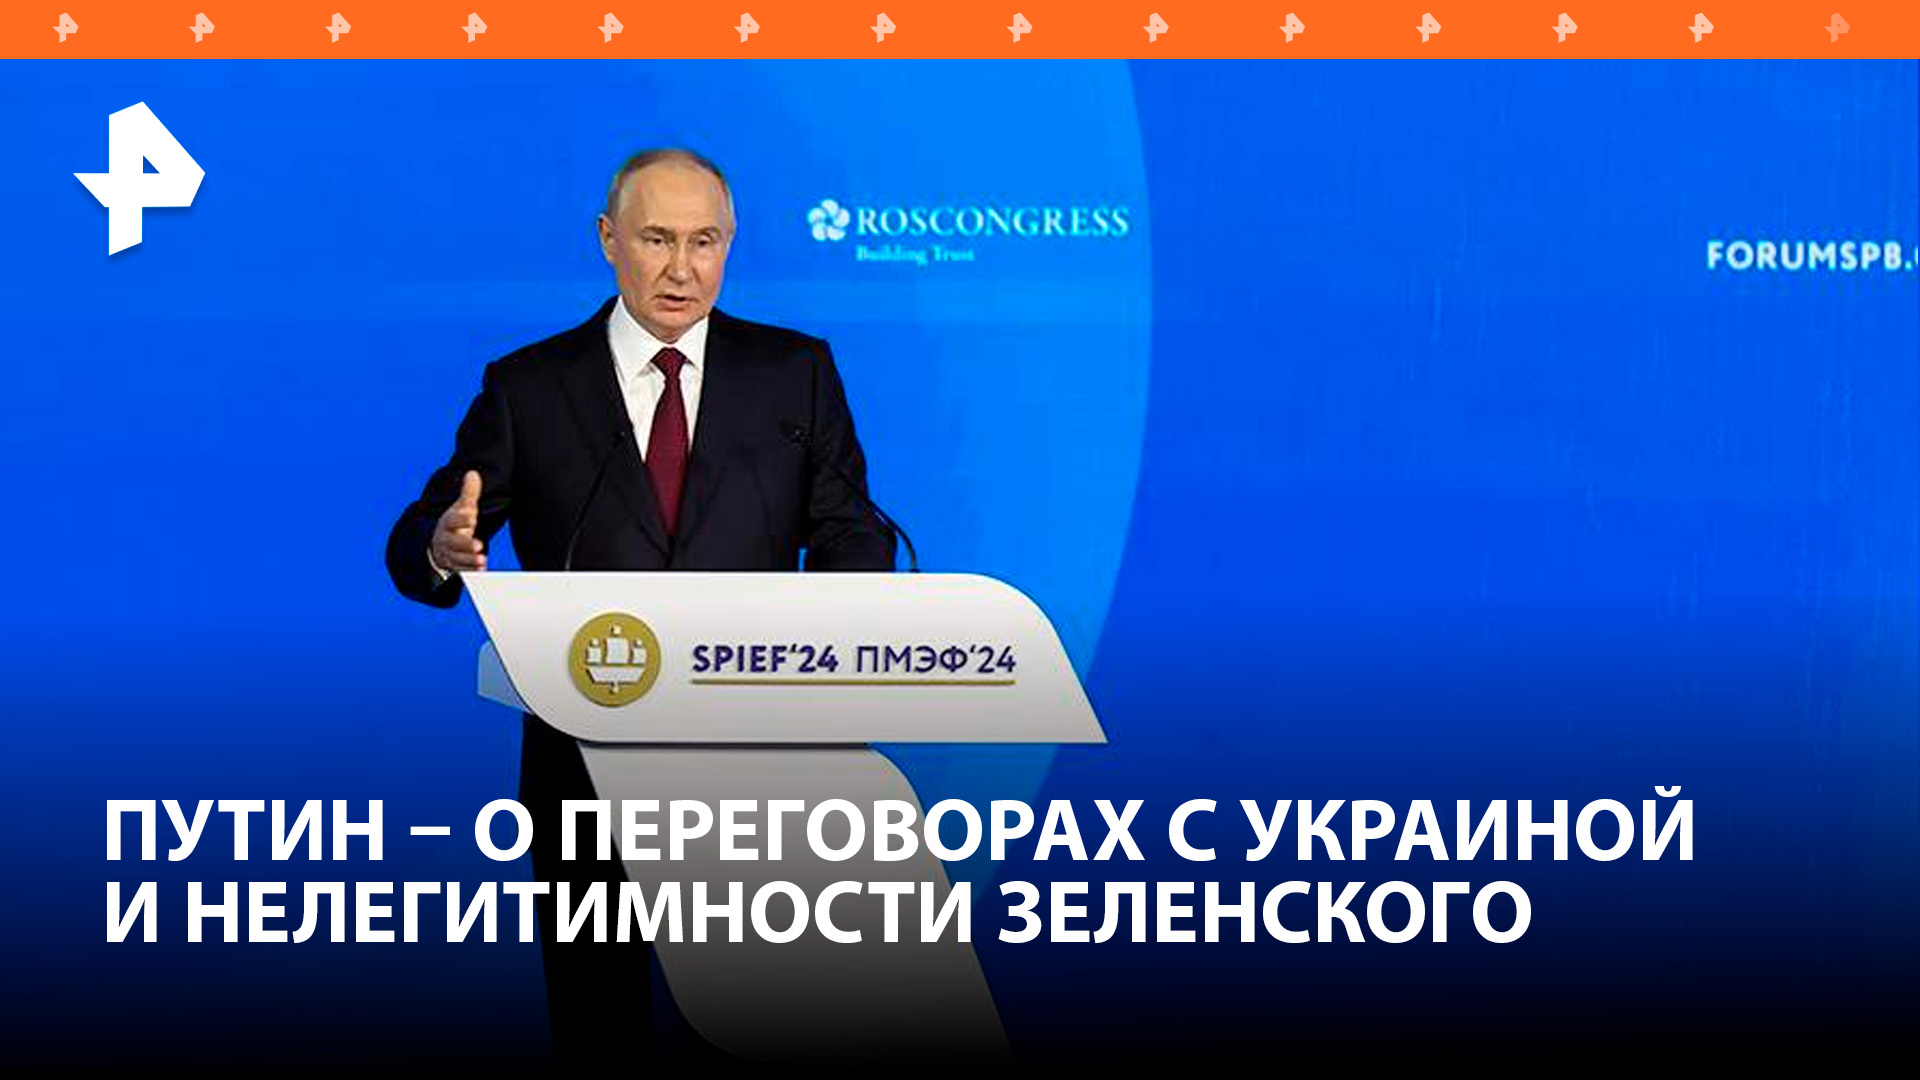 Исполнительная власть Украины утратила легитимность — Путин / РЕН Новости